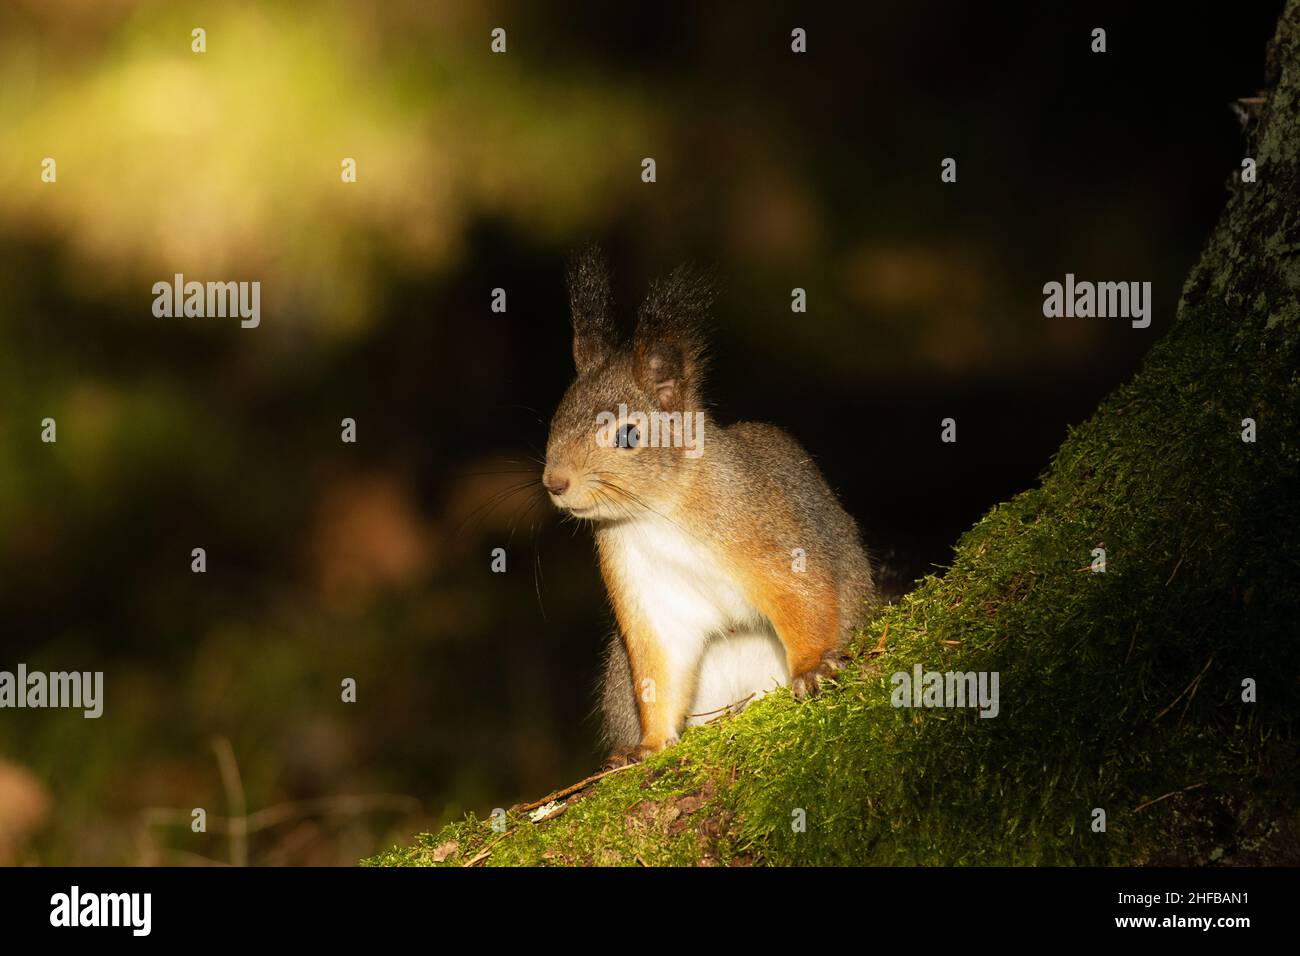 Un écureuil roux mignon, Sciurus vulgaris debout en vedette sur une racine d'épinette dans la forêt boréale estonienne. Banque D'Images